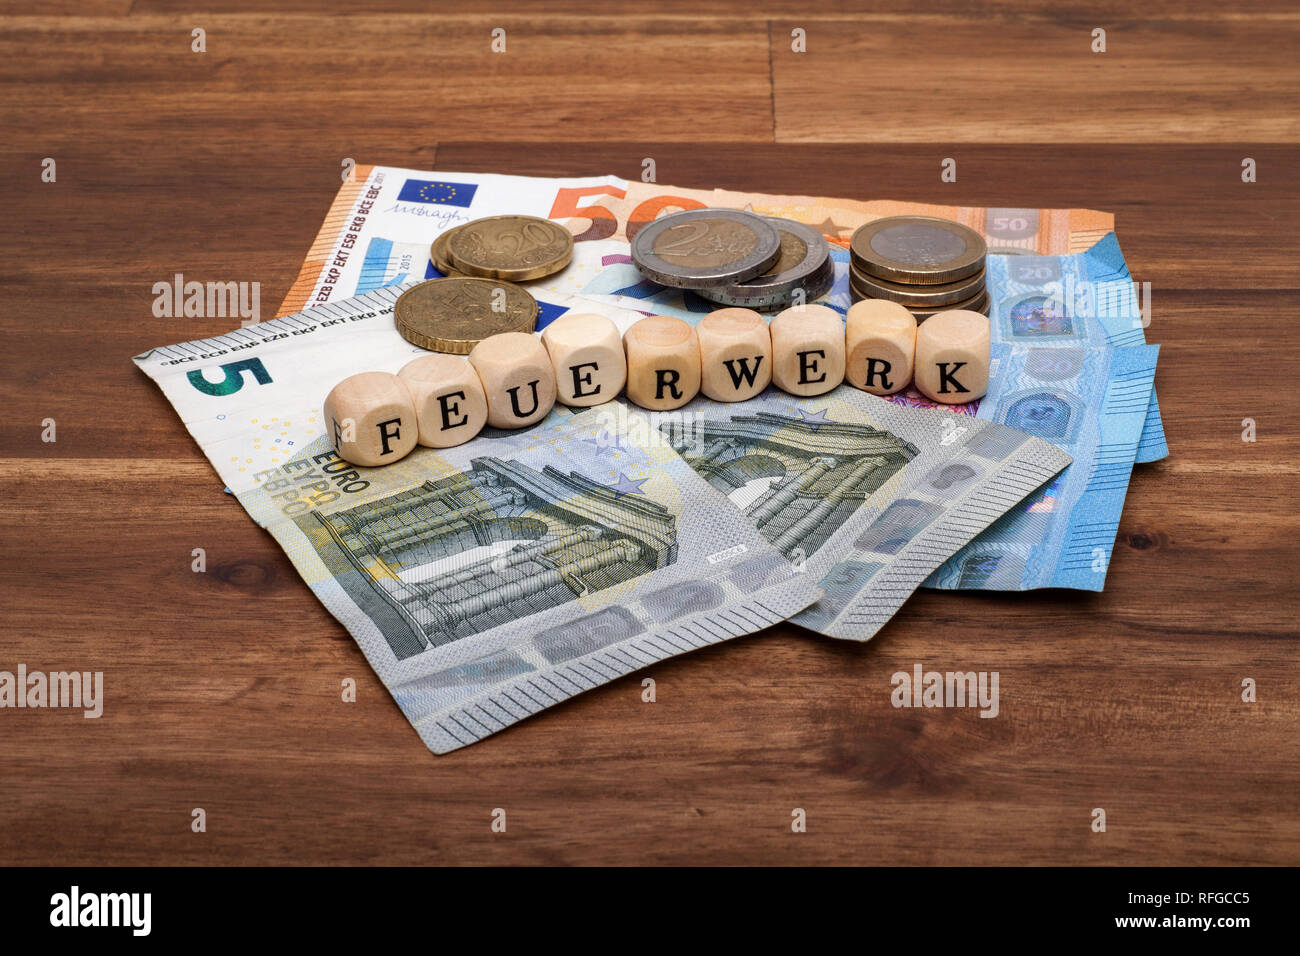 Die Euro Geldscheine und Münzen liegen auf dem Tisch mit dem Wort Feuerwerk Stock Photo